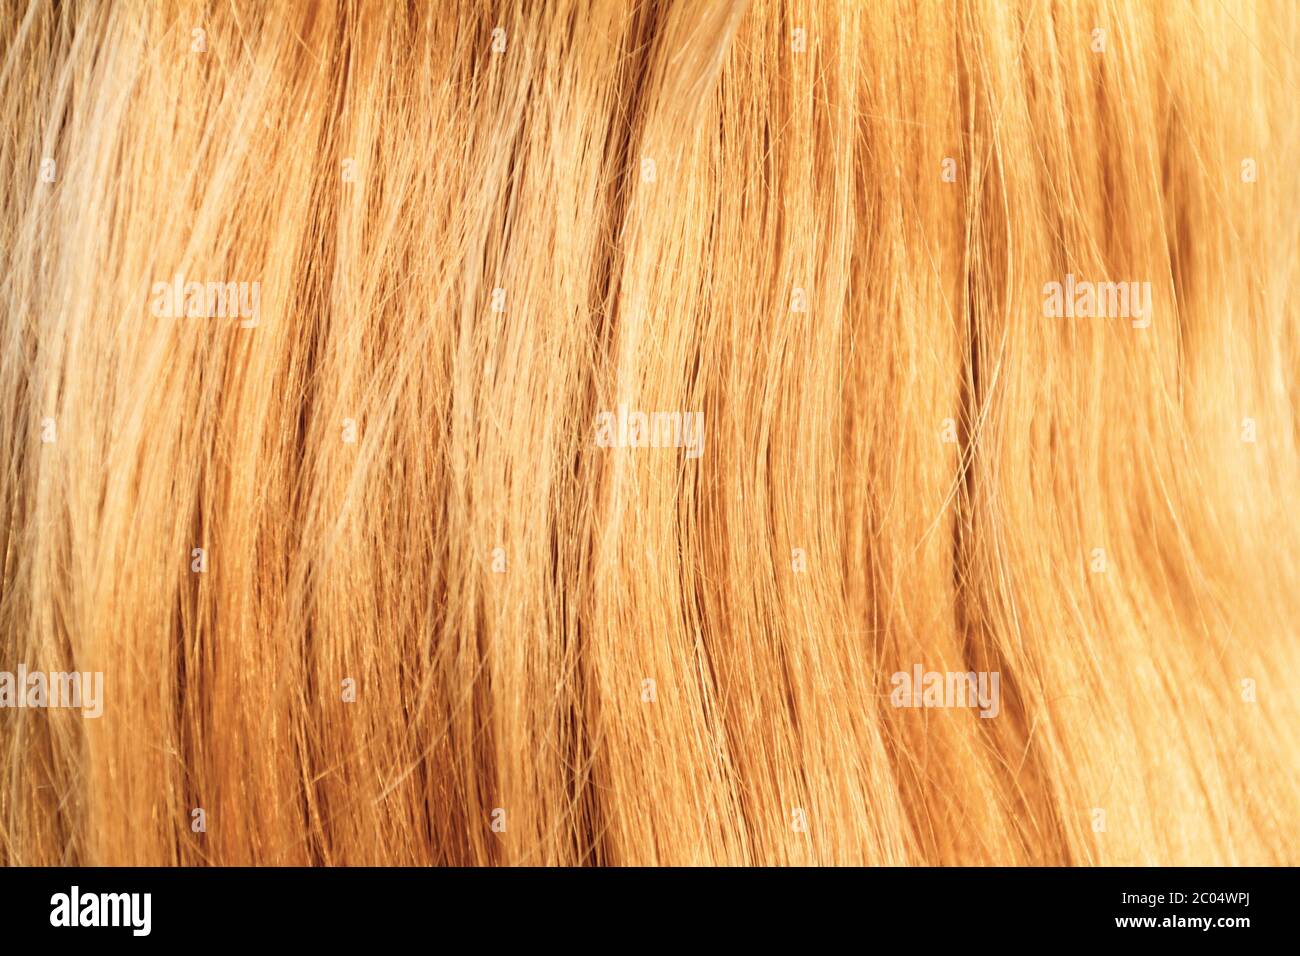 Cheveux blonds. Texture des cheveux blonds - photo de gros plan Banque D'Images